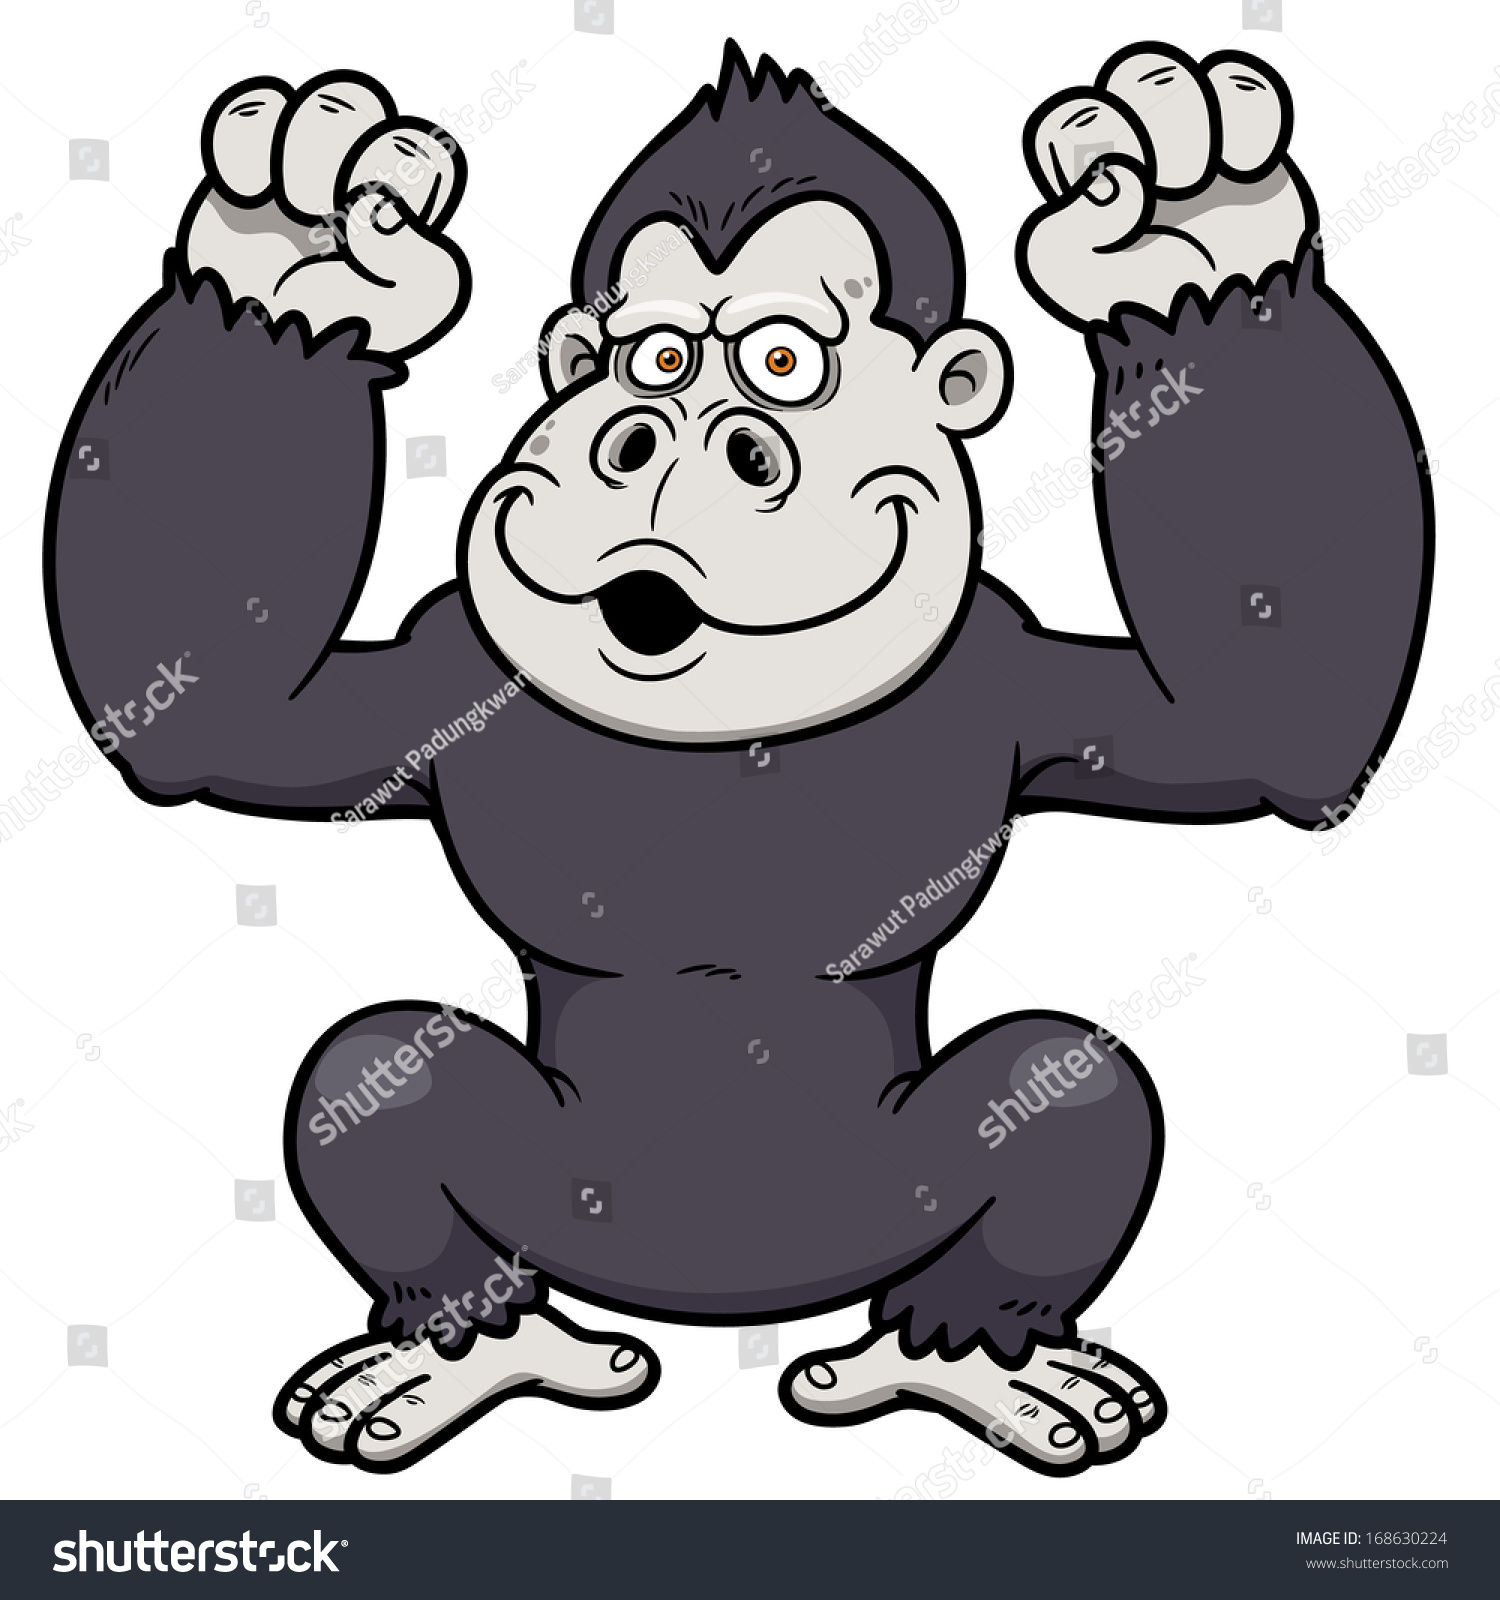 Vector Illustration Of Gorilla Cartoon - 168630224 : Shutterstock